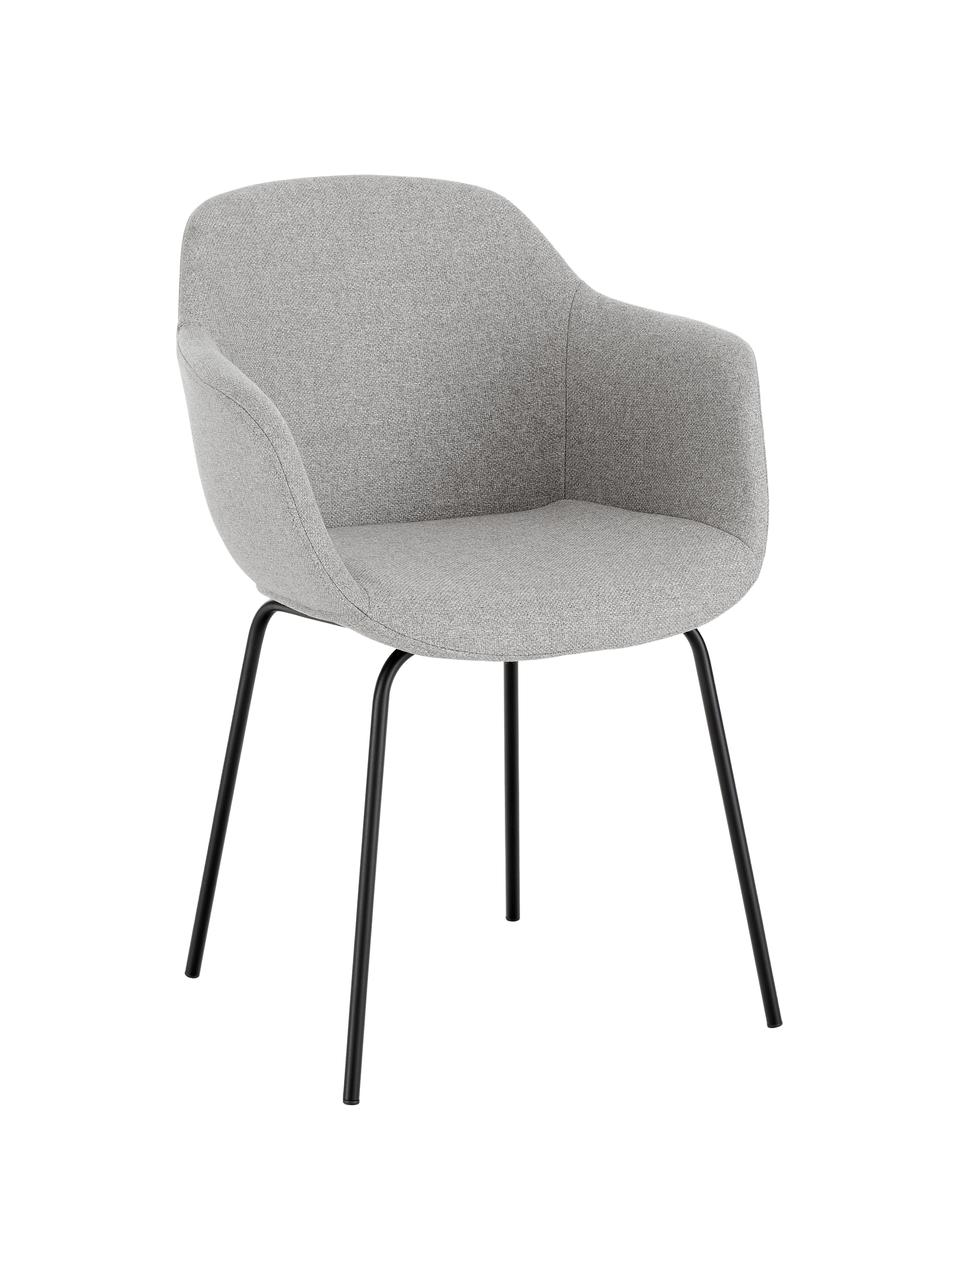 Petite chaise scandinave gris Fiji, Tissu gris clair, noir, larg. 58 x prof. 56 cm